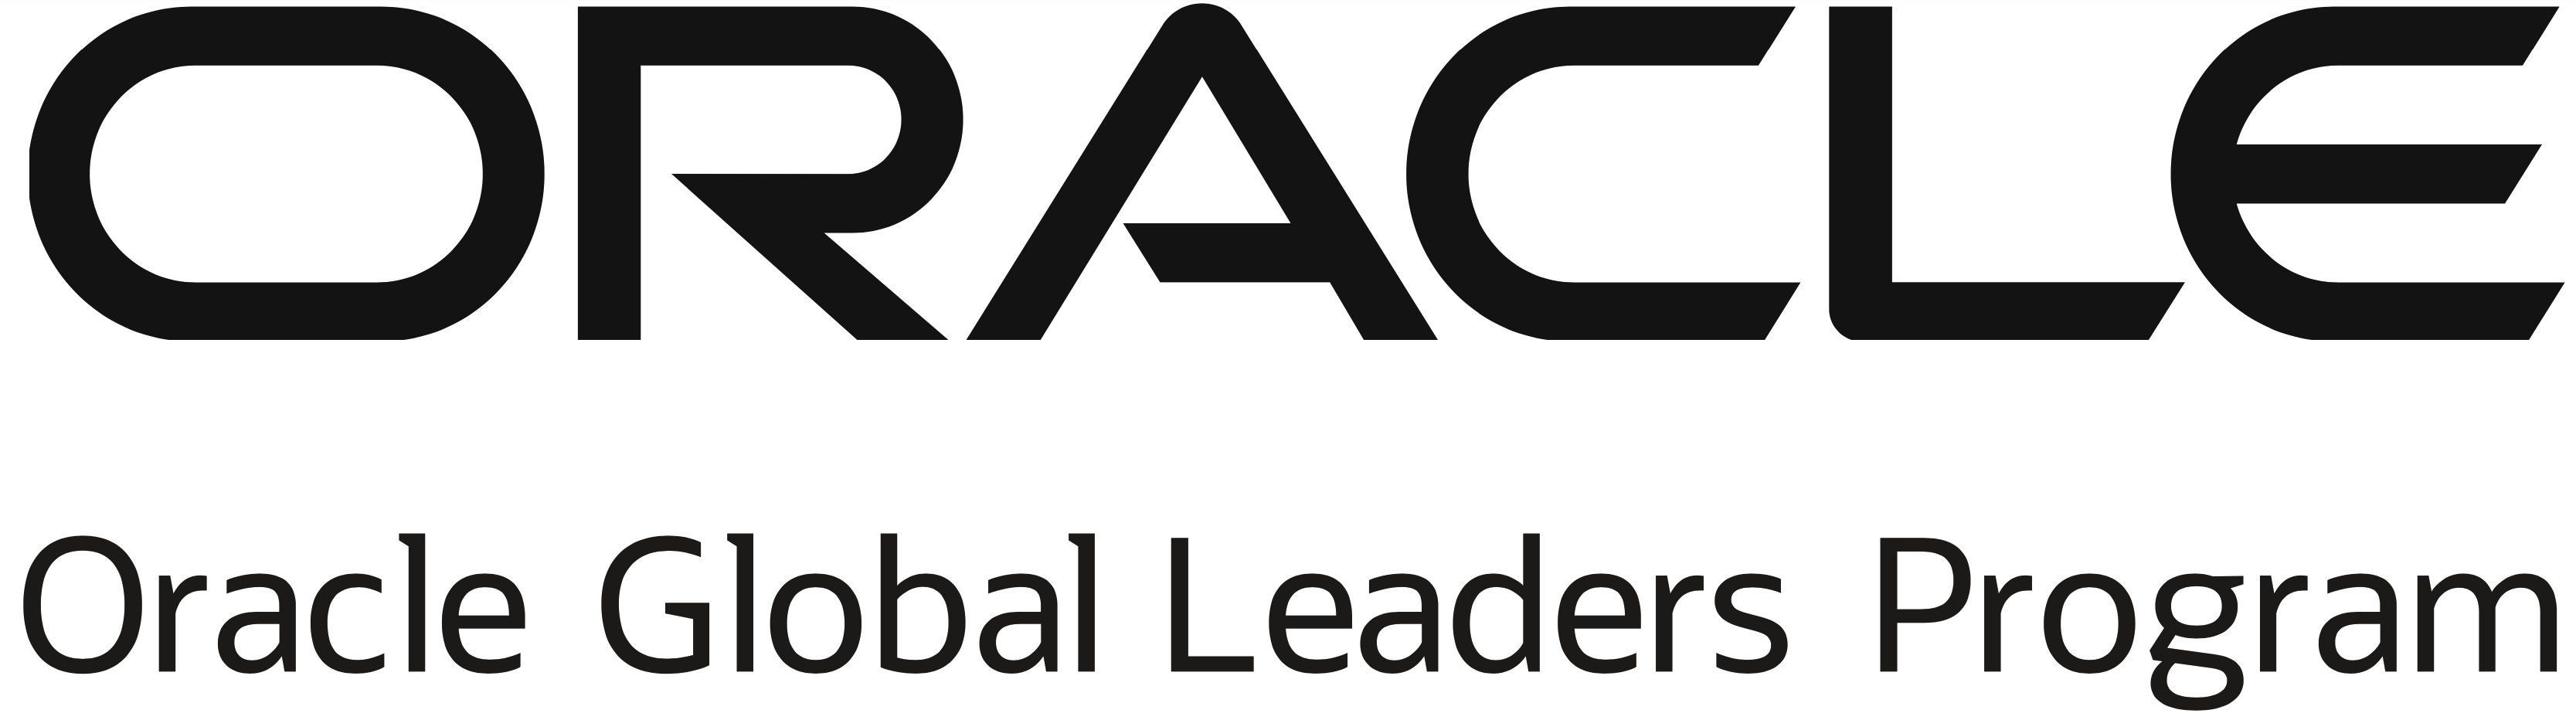 Oracle Global Leaders Program Sponsorship Logo